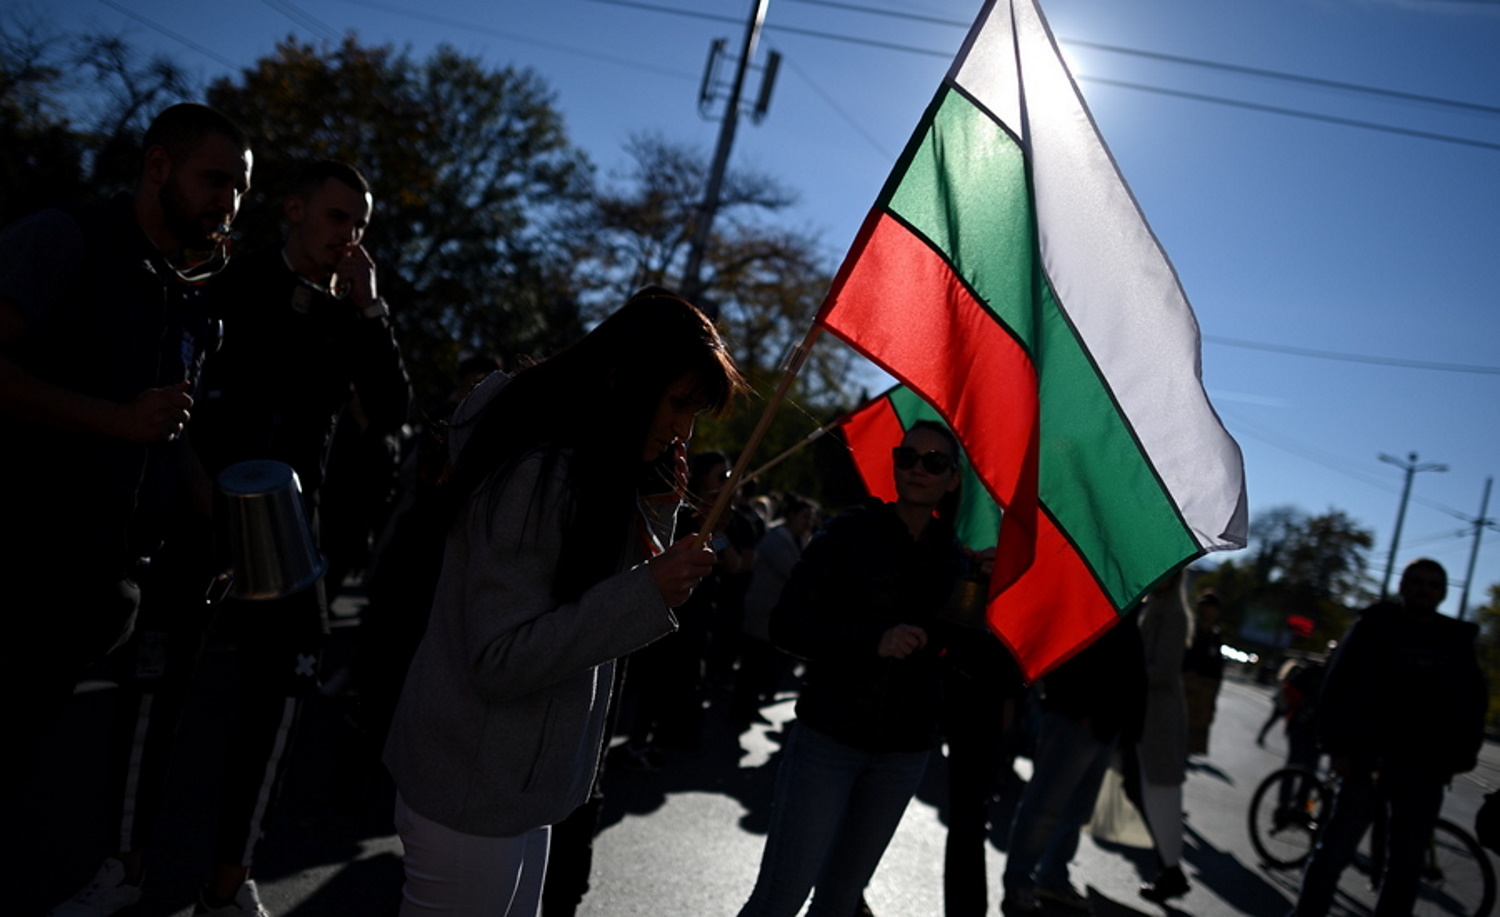 Βουλγαρία: Σε πολιτικό αδιέξοδο η χώρα – Το κοινοβούλιο δεν στηρίζει την κυβέρνηση τεχνοκρατών